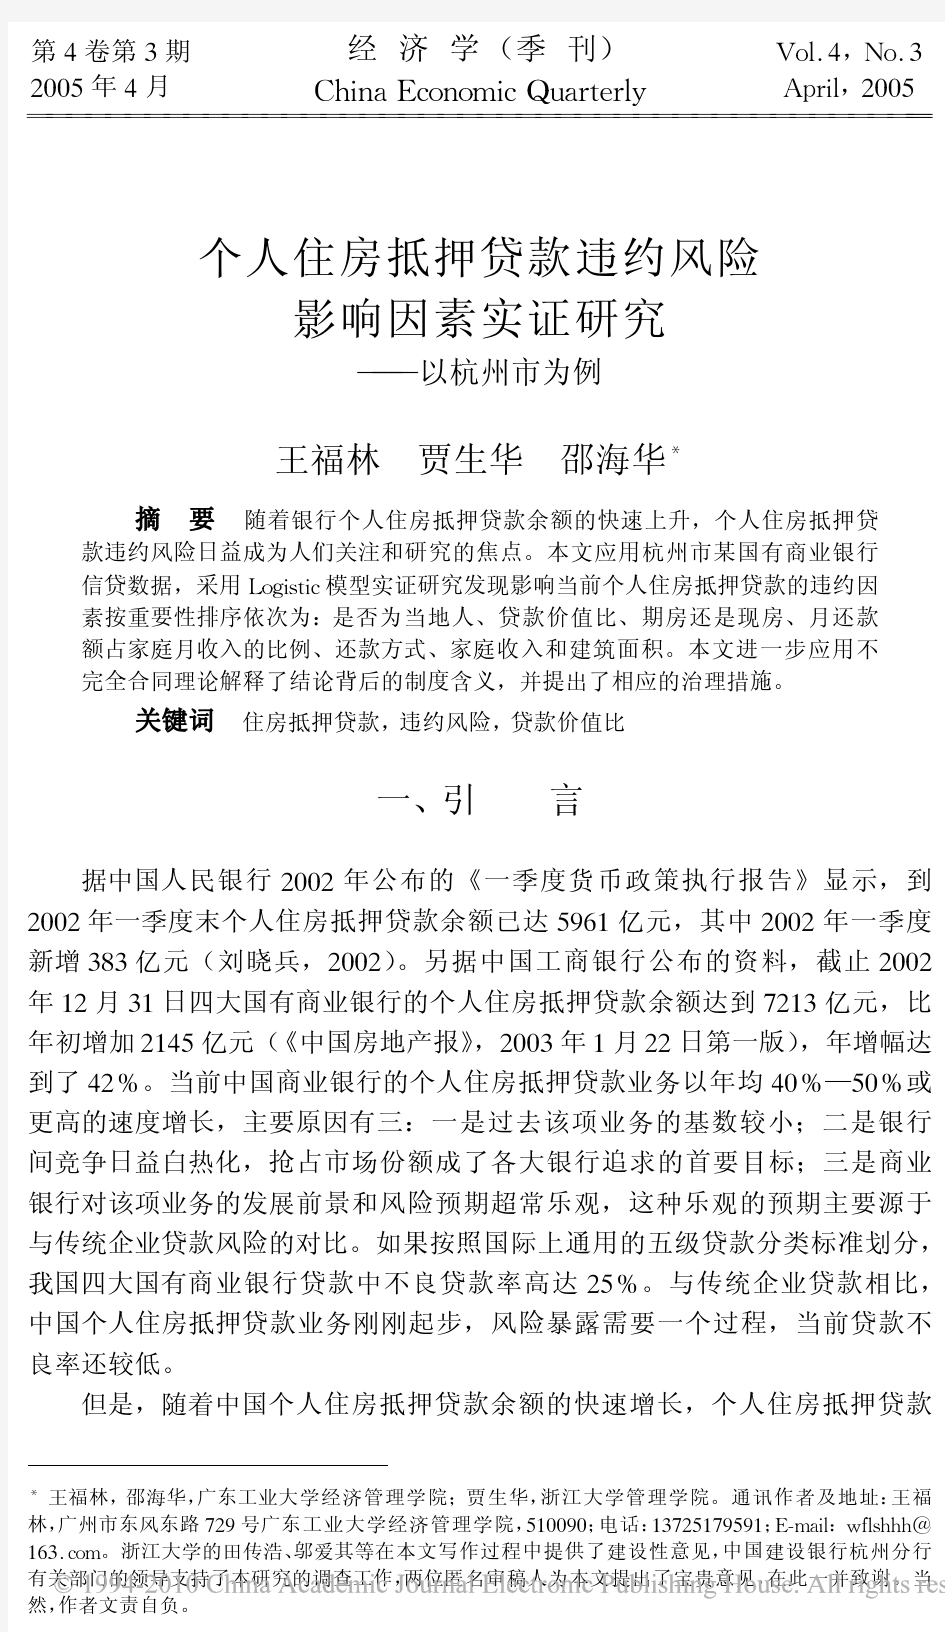 个人住房抵押贷款违约风险影响因素实证研究_以杭州市为例_王福林